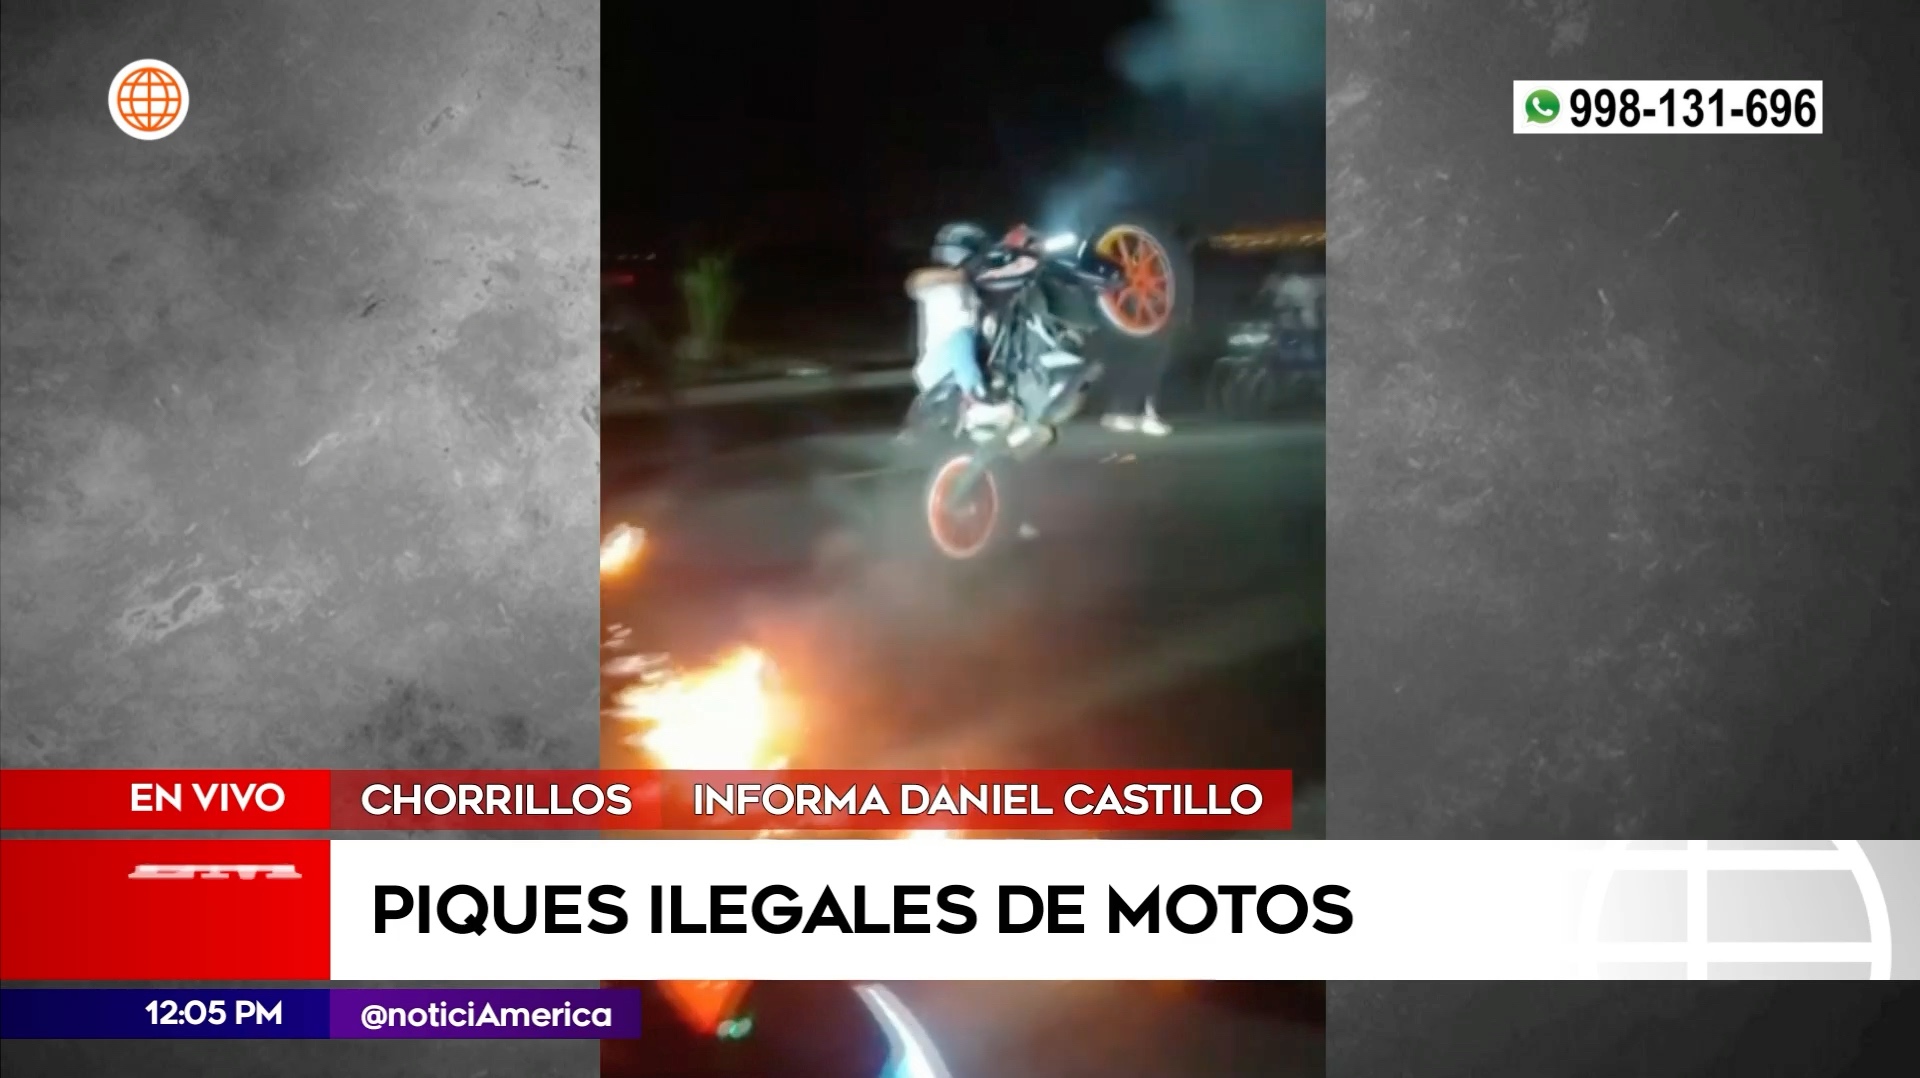 Piques ilegales de motos en Chorrillos. Foto: América Noticias